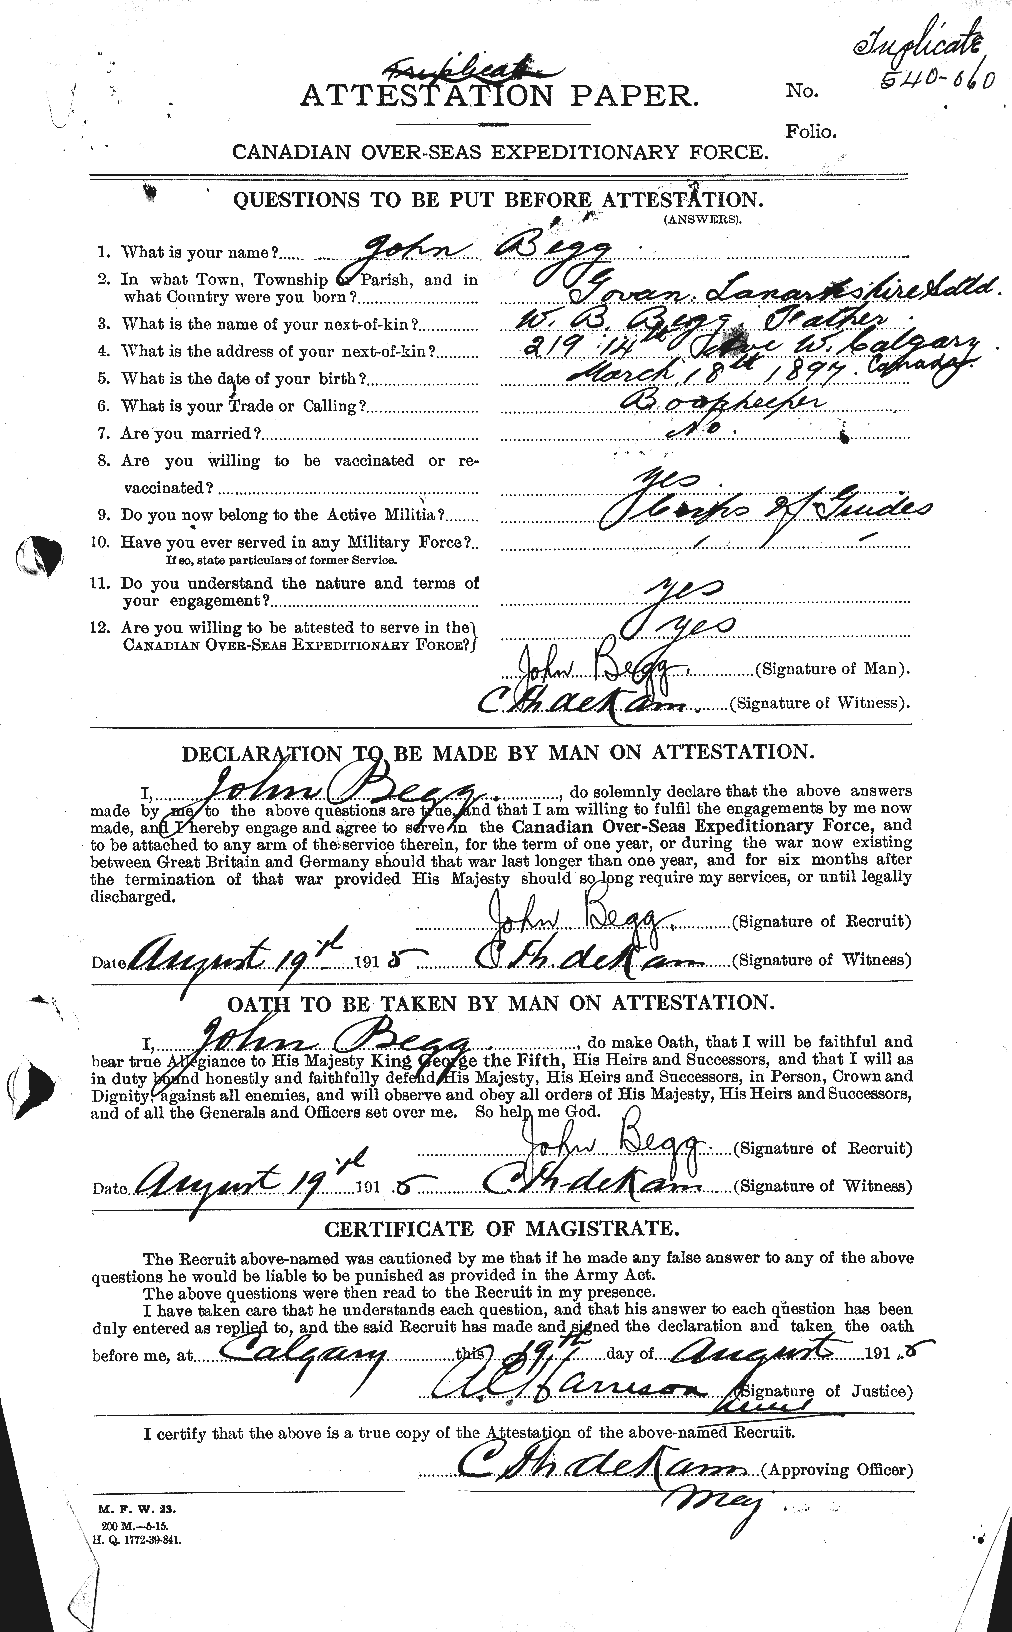 Dossiers du Personnel de la Première Guerre mondiale - CEC 232412a